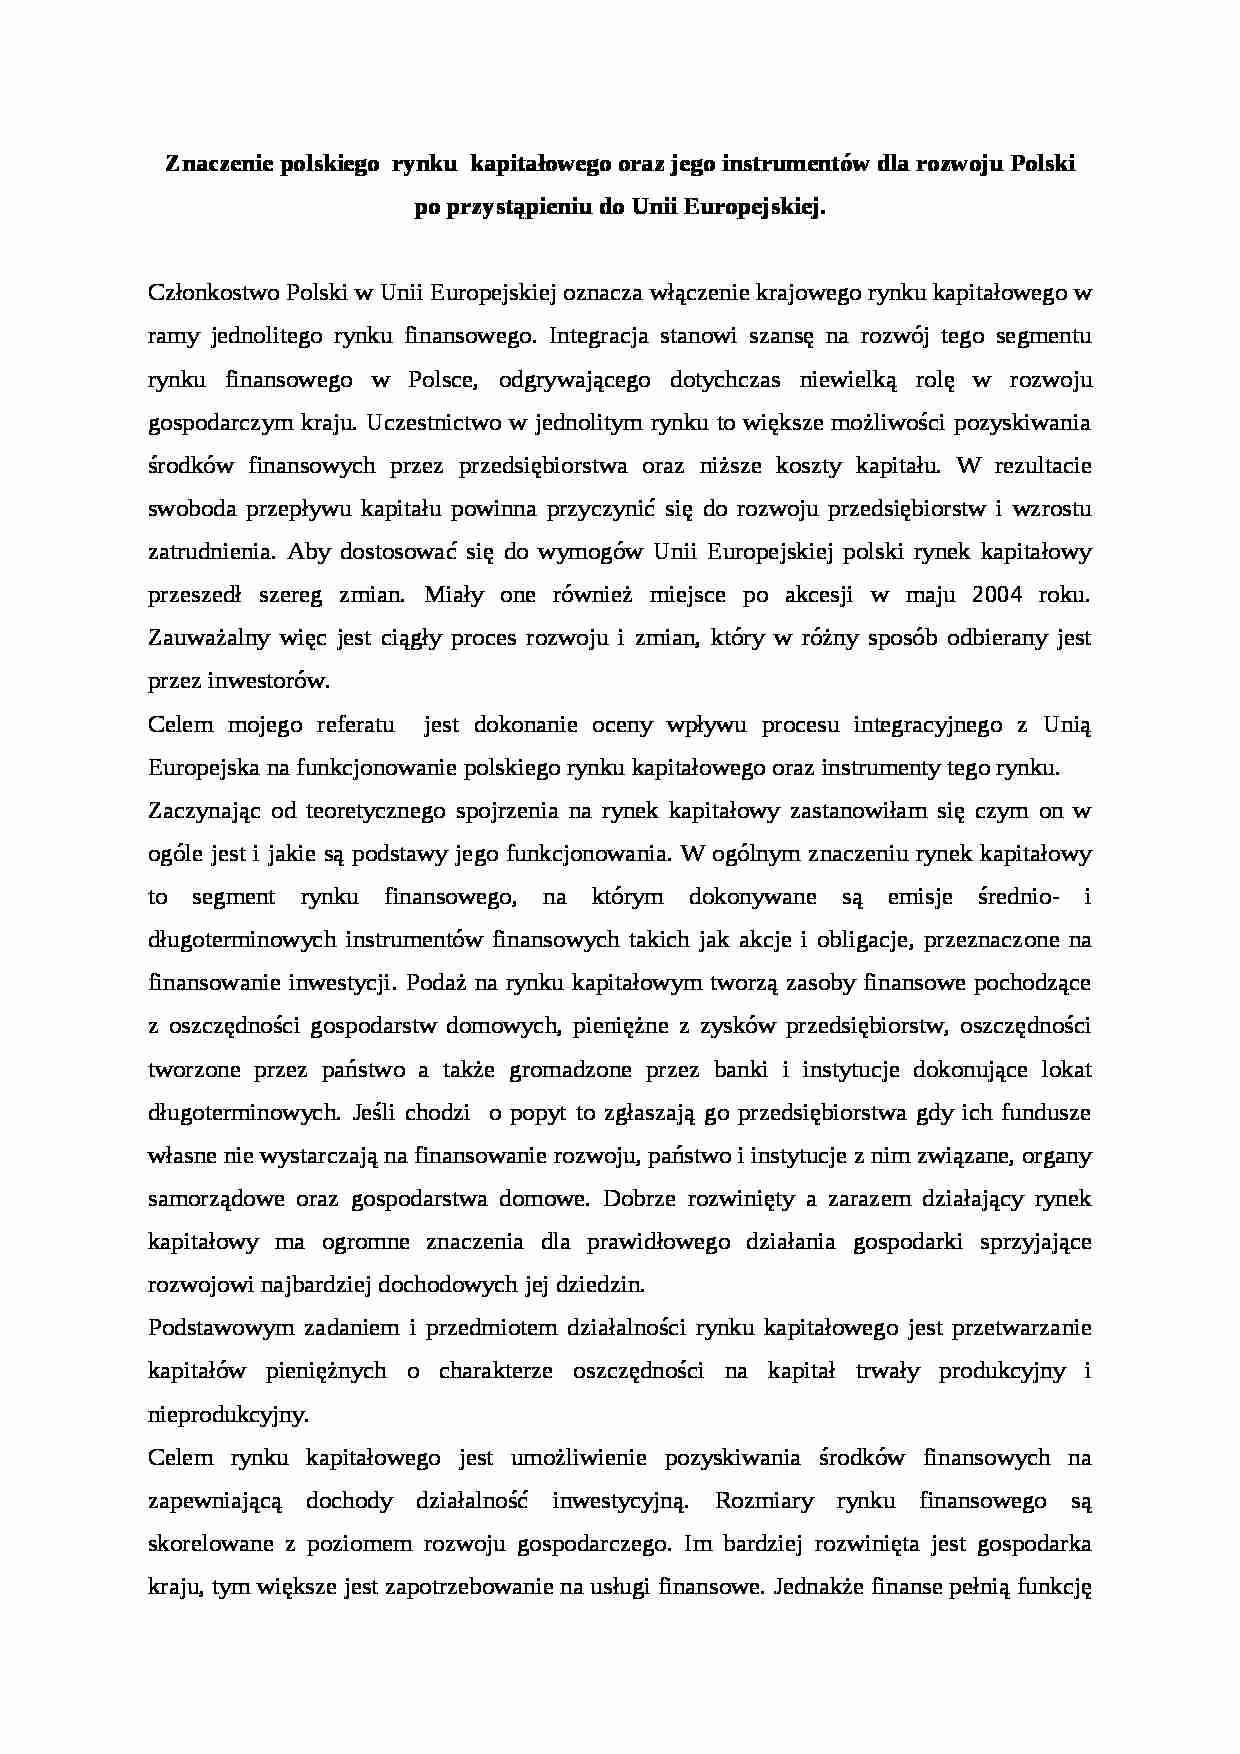 Znaczenie polskiego  rynku  kapitałowego oraz jego instrumentów dla rozwoju Polski  po przystąpieniu do Unii Europejskiej.- praca  zaliczeniowa, MWSE - strona 1